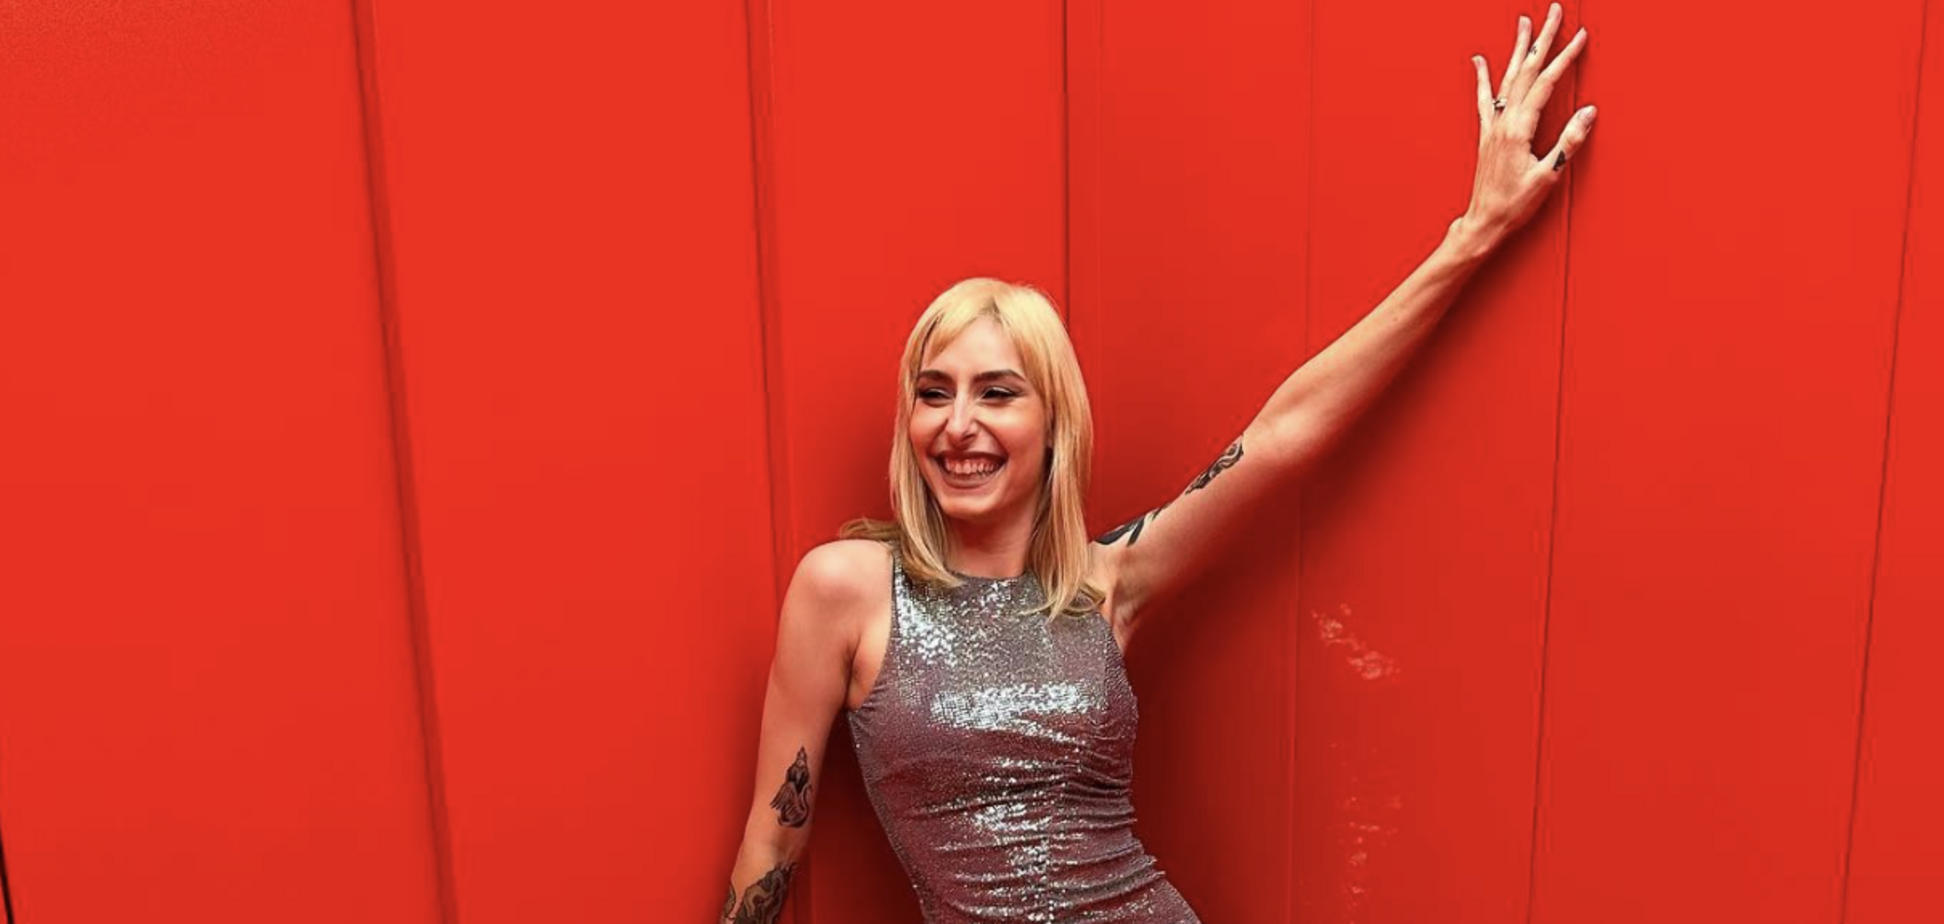 Представительница Словении на Евровидении попала в пророссийский скандал из-за группы 'Тату': как она оправдалась